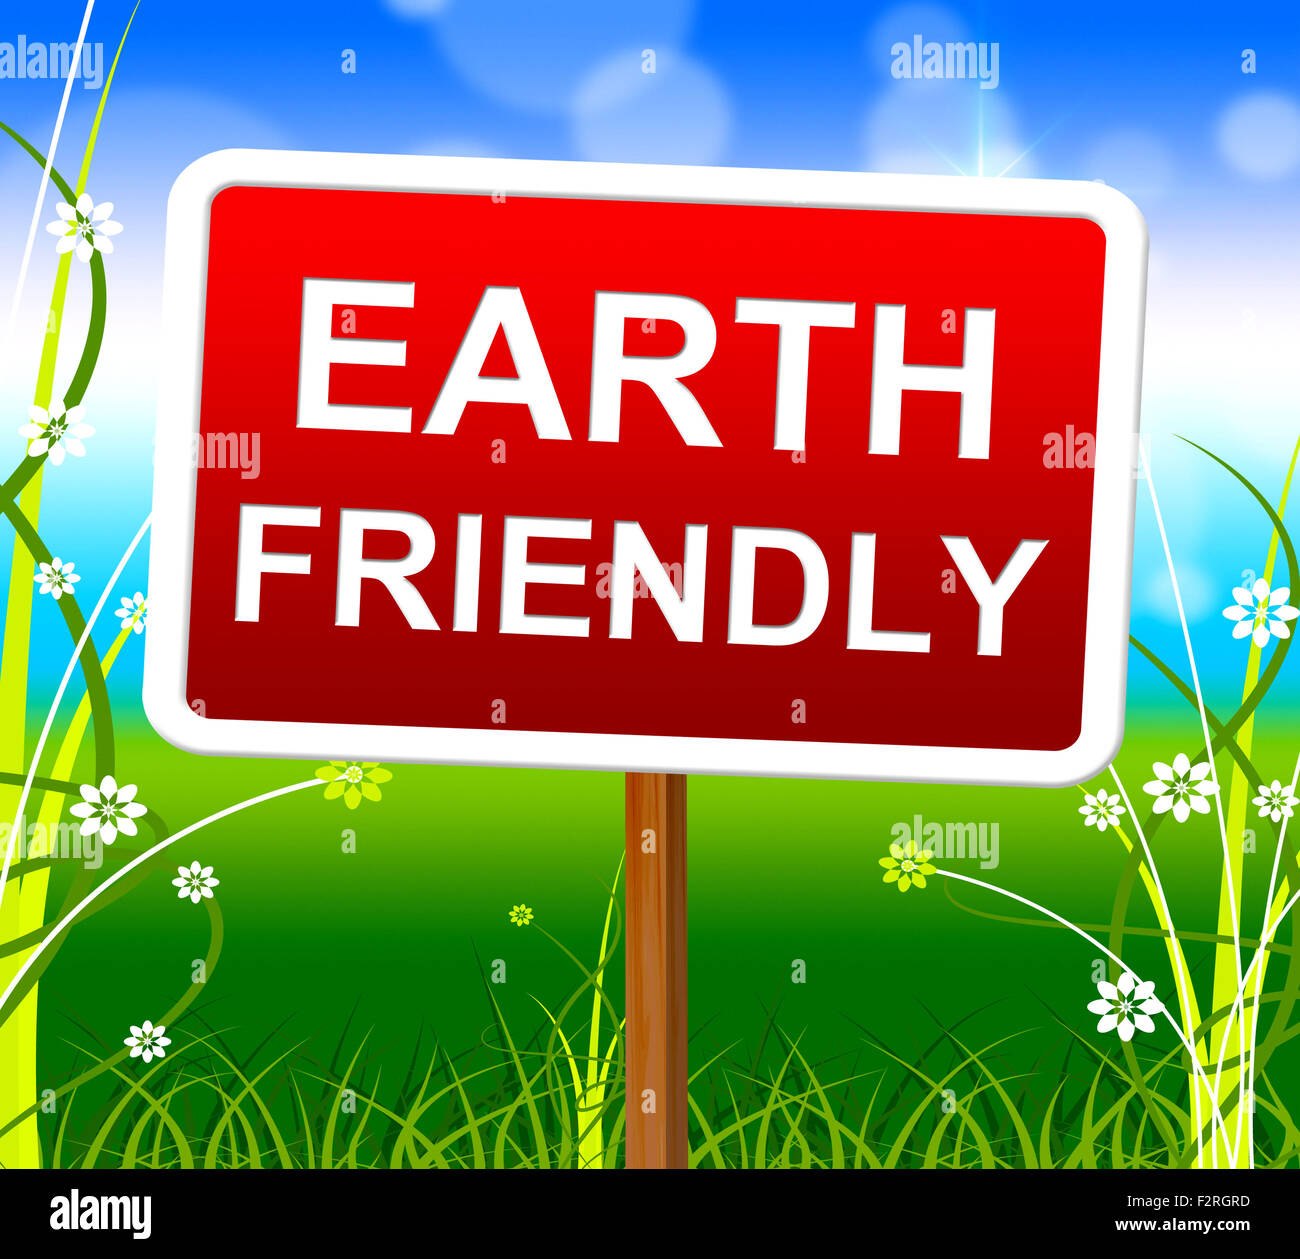 Earth Friendly indiquant l'écosystème naturel et écologique Banque D'Images